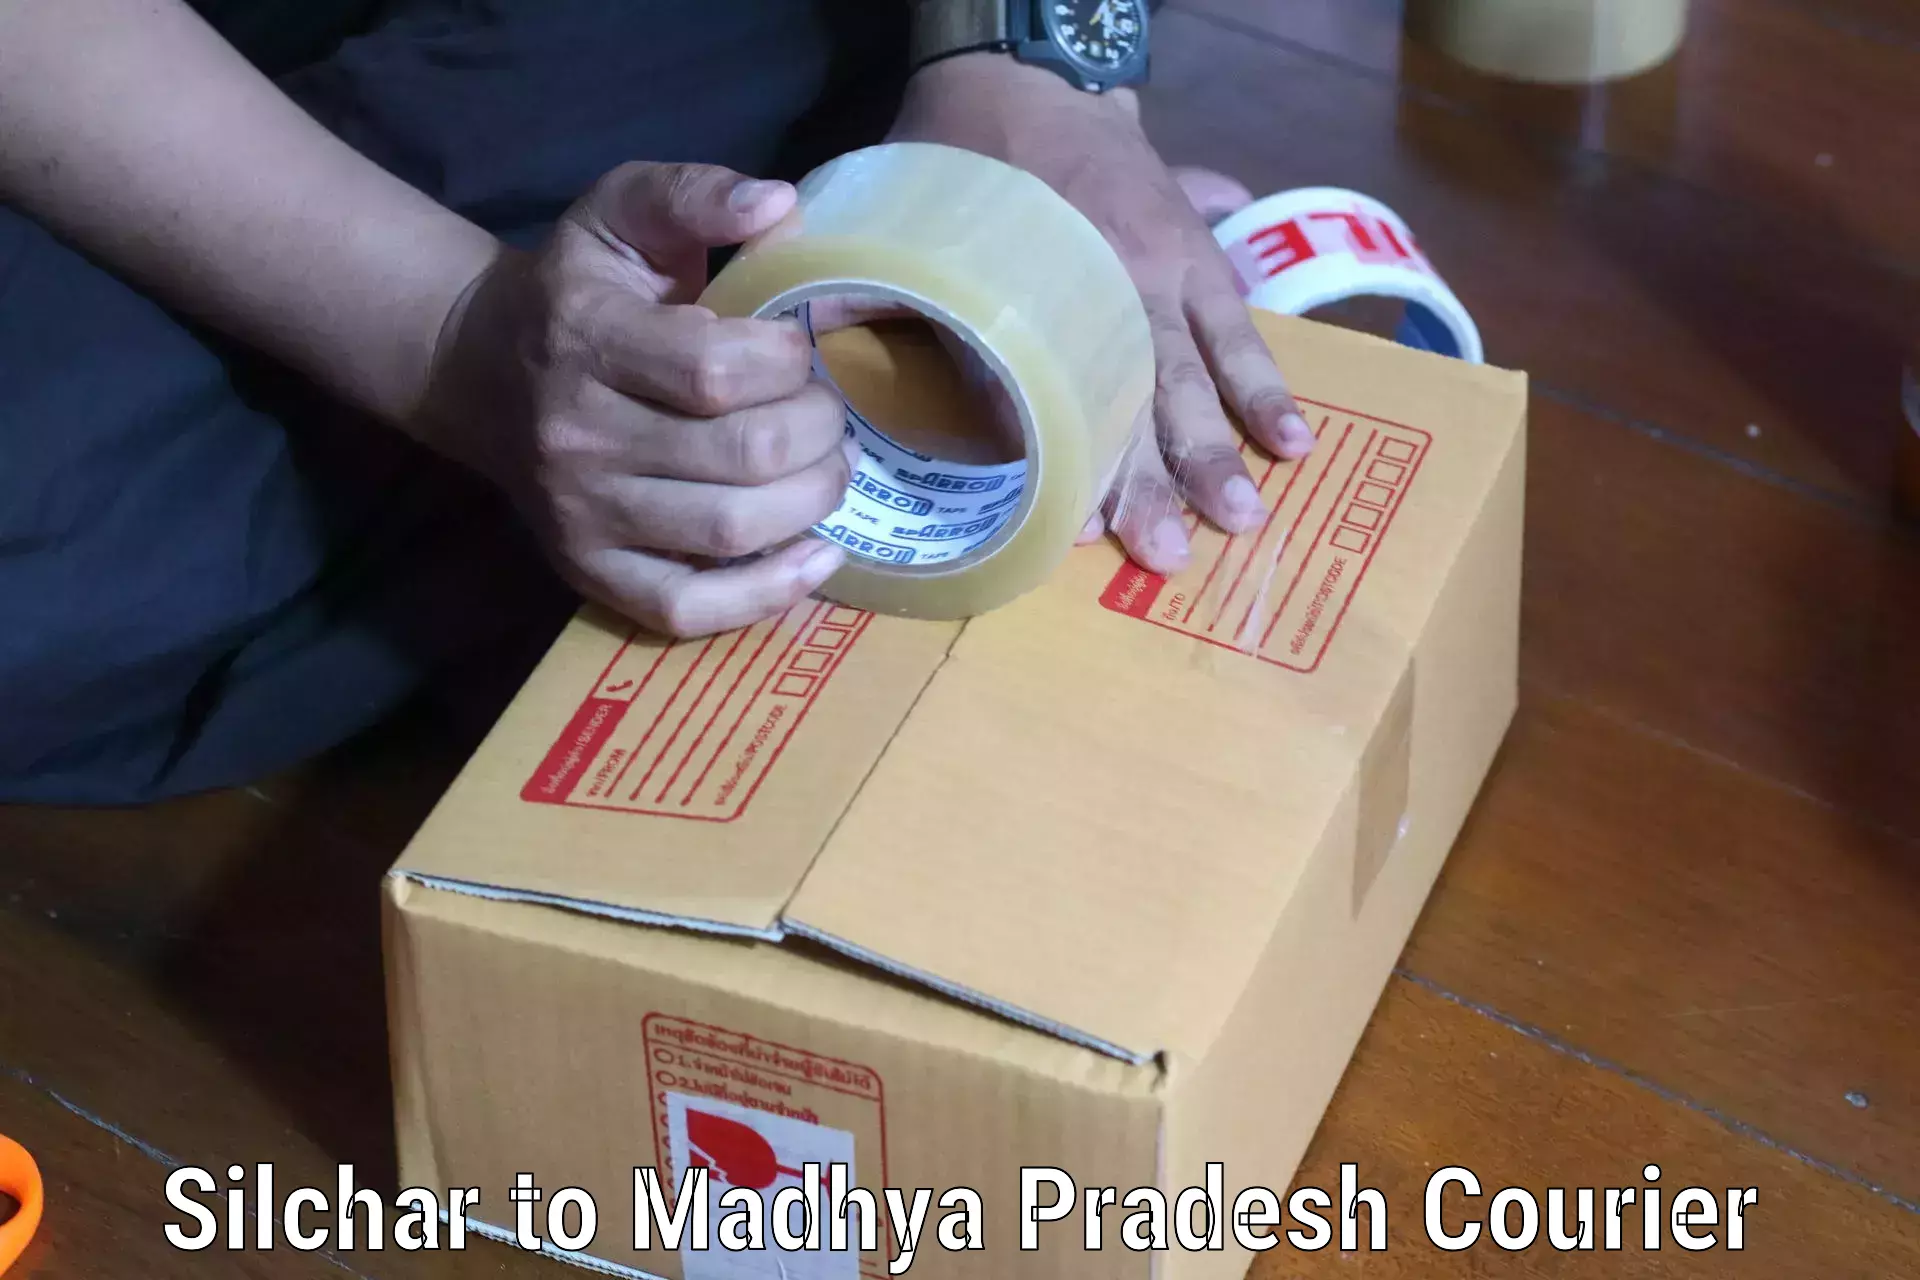 High-speed parcel service Silchar to Dewas